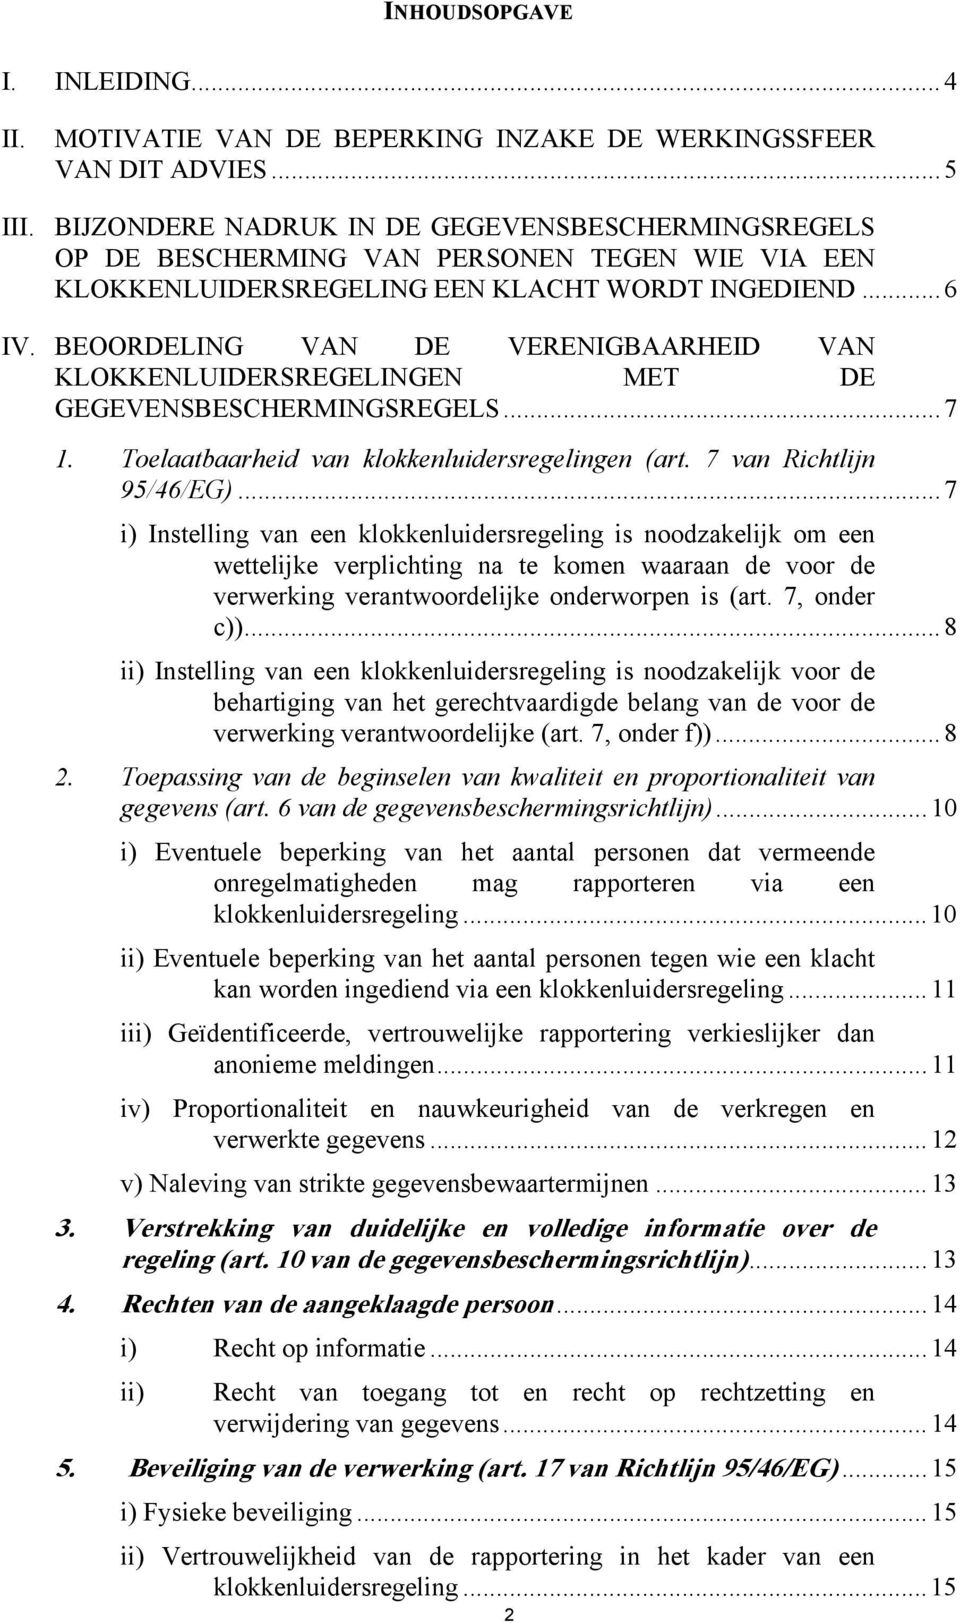 BEOORDELING VAN DE VERENIGBAARHEID VAN KLOKKENLUIDERSREGELINGEN MET DE GEGEVENSBESCHERMINGSREGELS...7 1. Toelaatbaarheid van klokkenluidersregelingen (art. 7 van Richtlijn 95/46/EG).